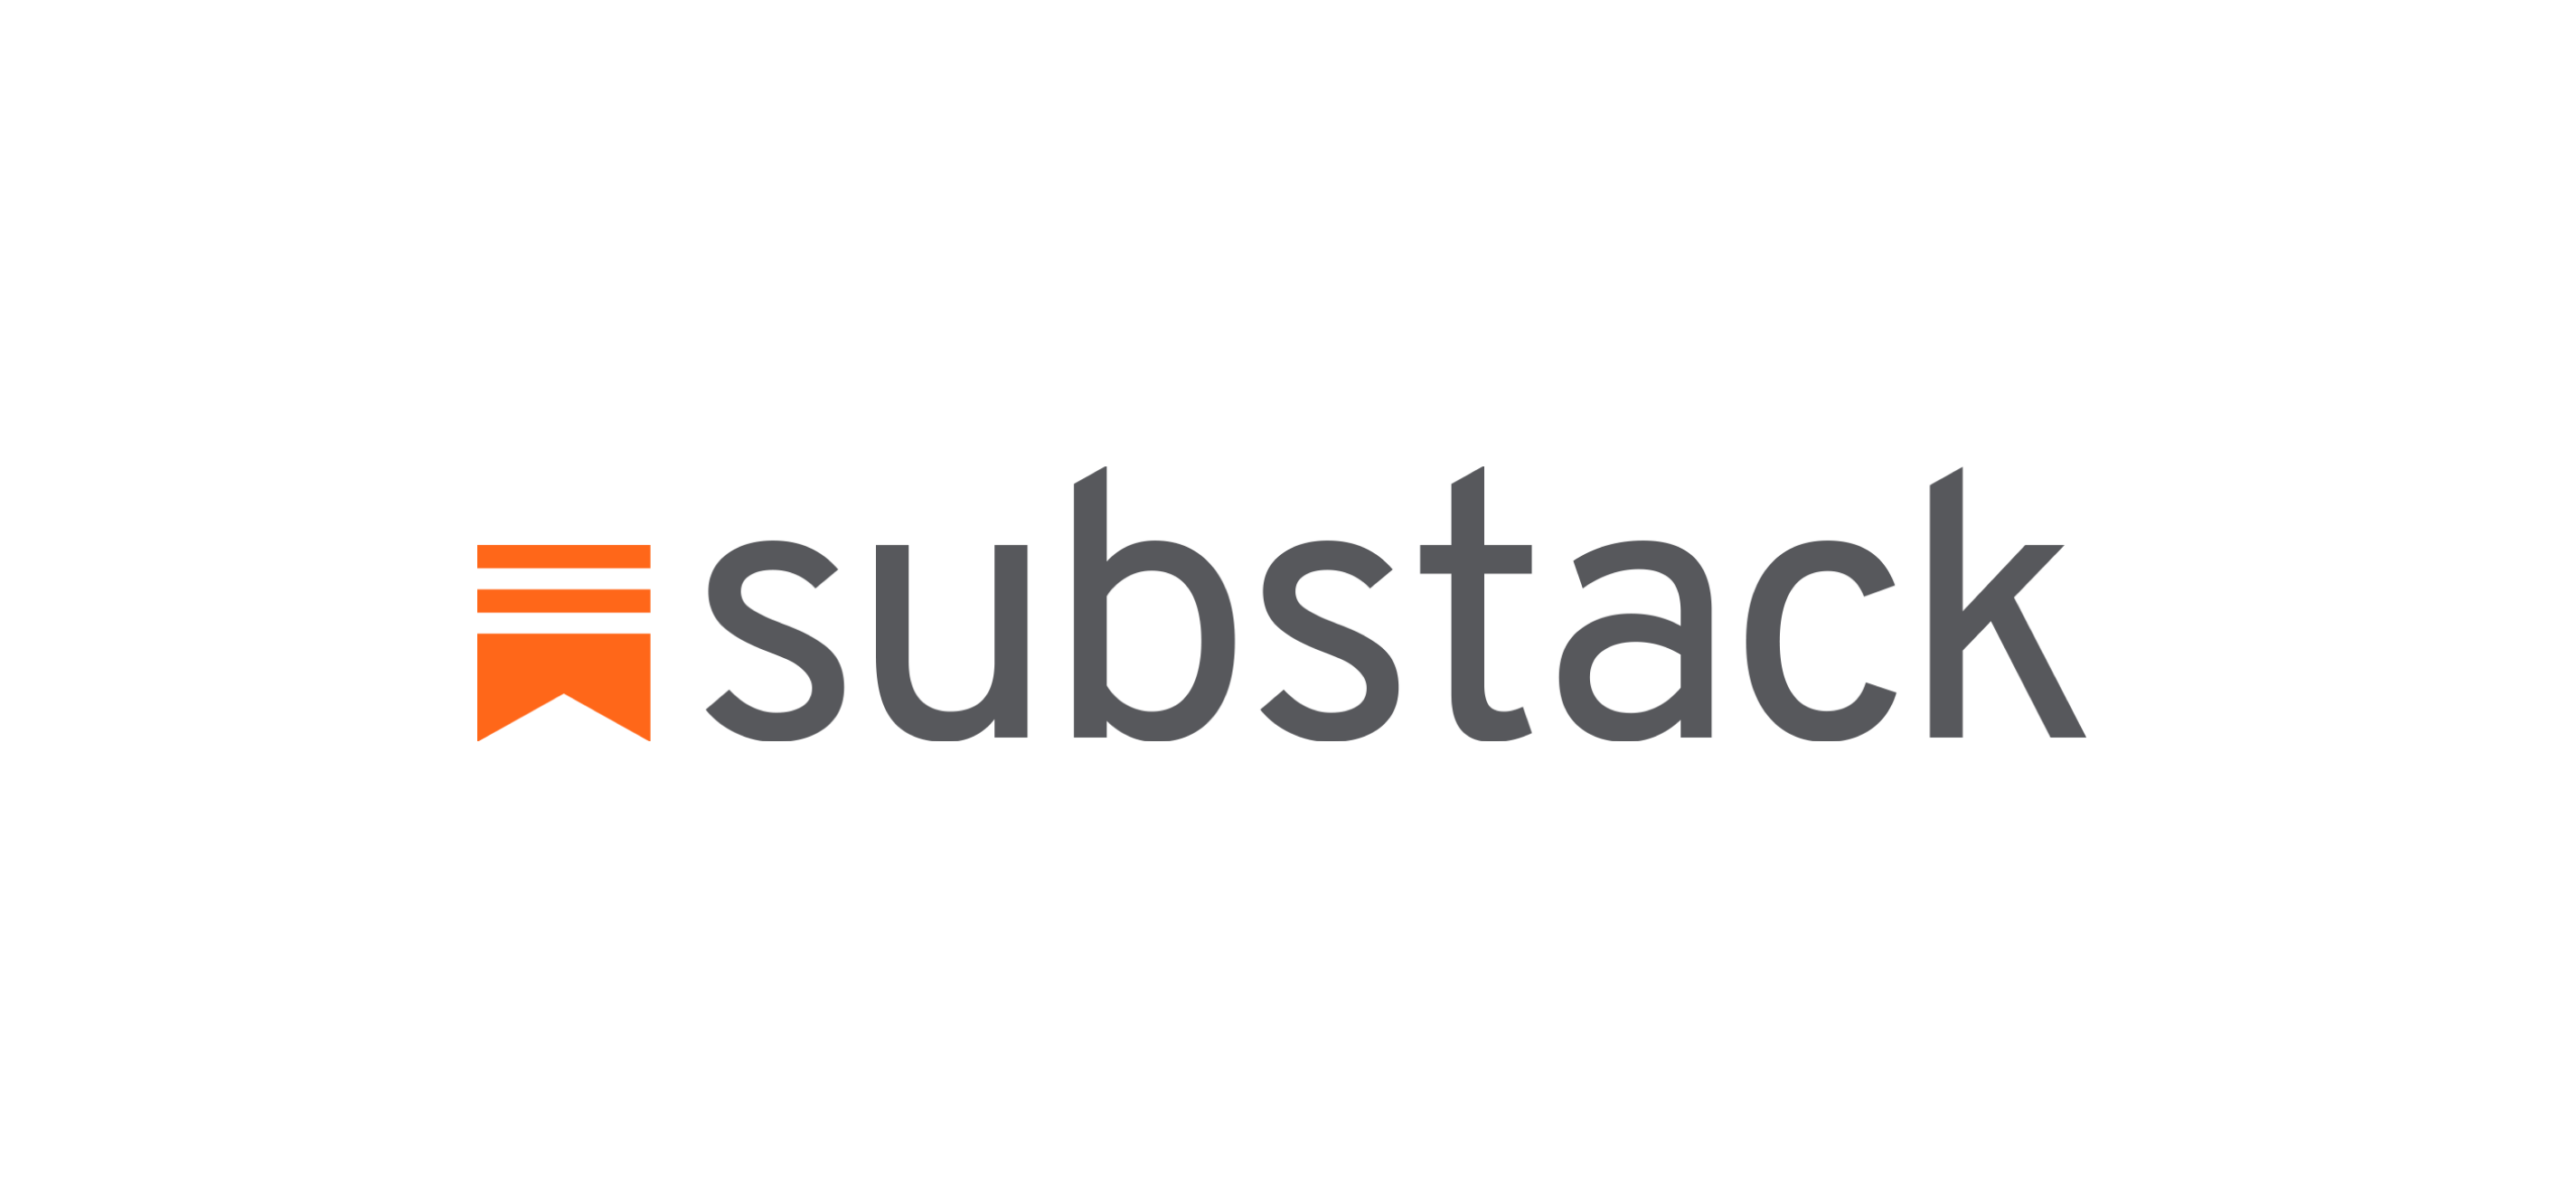 substack.com용 프록시